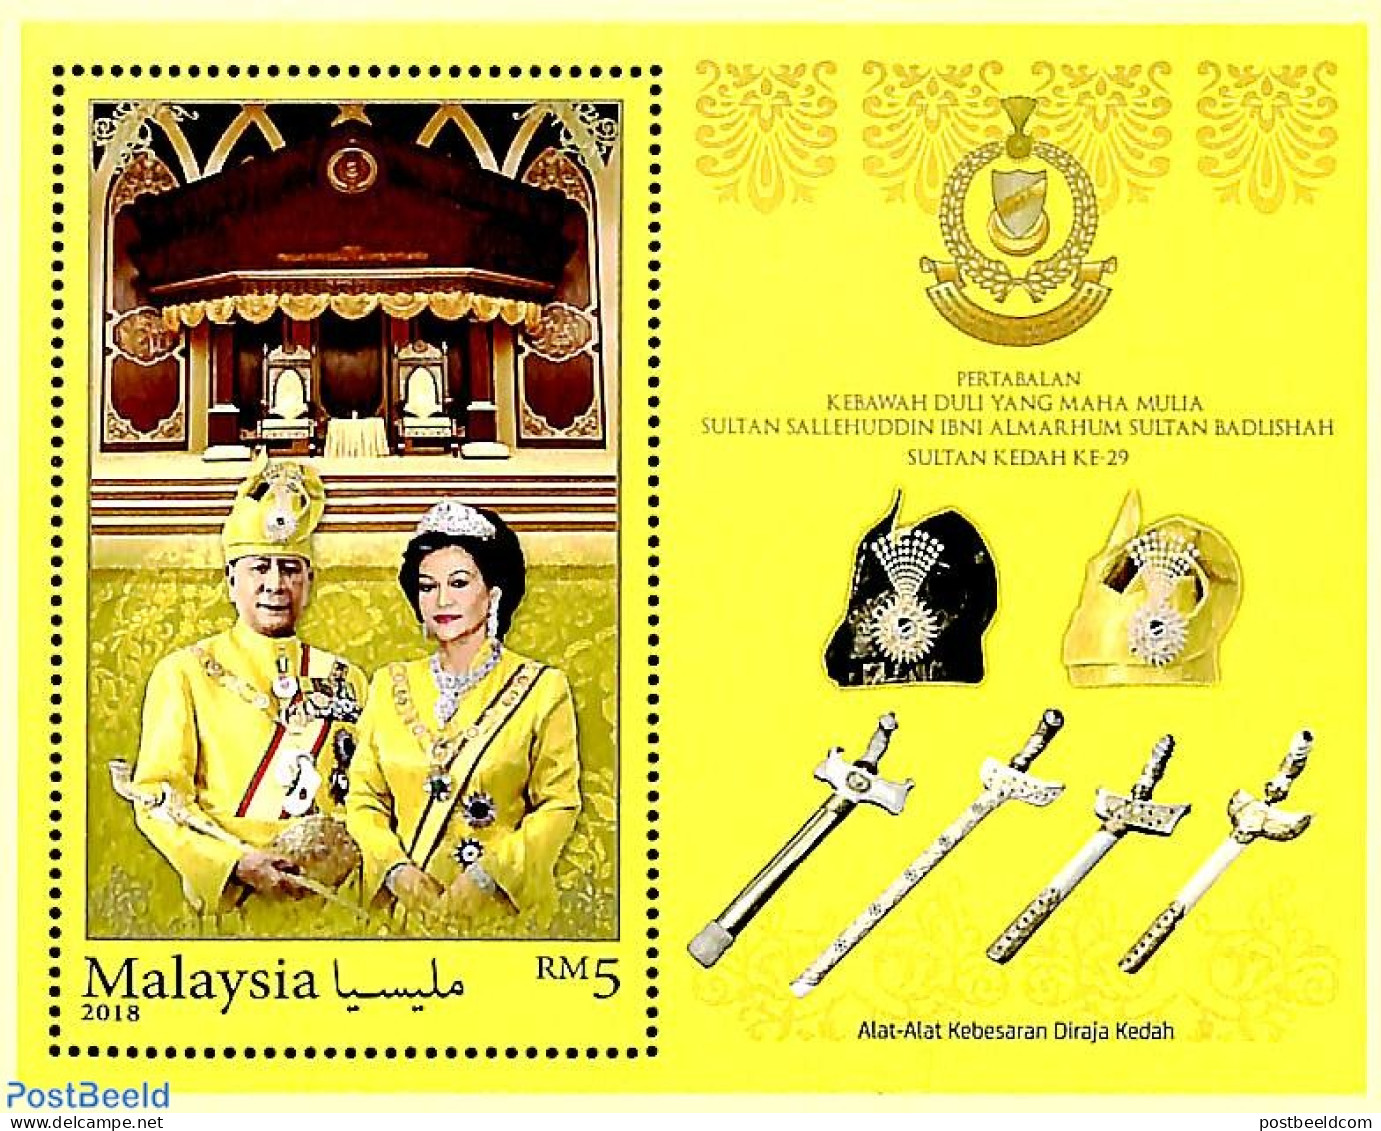 Malaysia 2018 Pertabalan Kebawah... S/s, Mint NH, History - Kings & Queens (Royalty) - Royalties, Royals